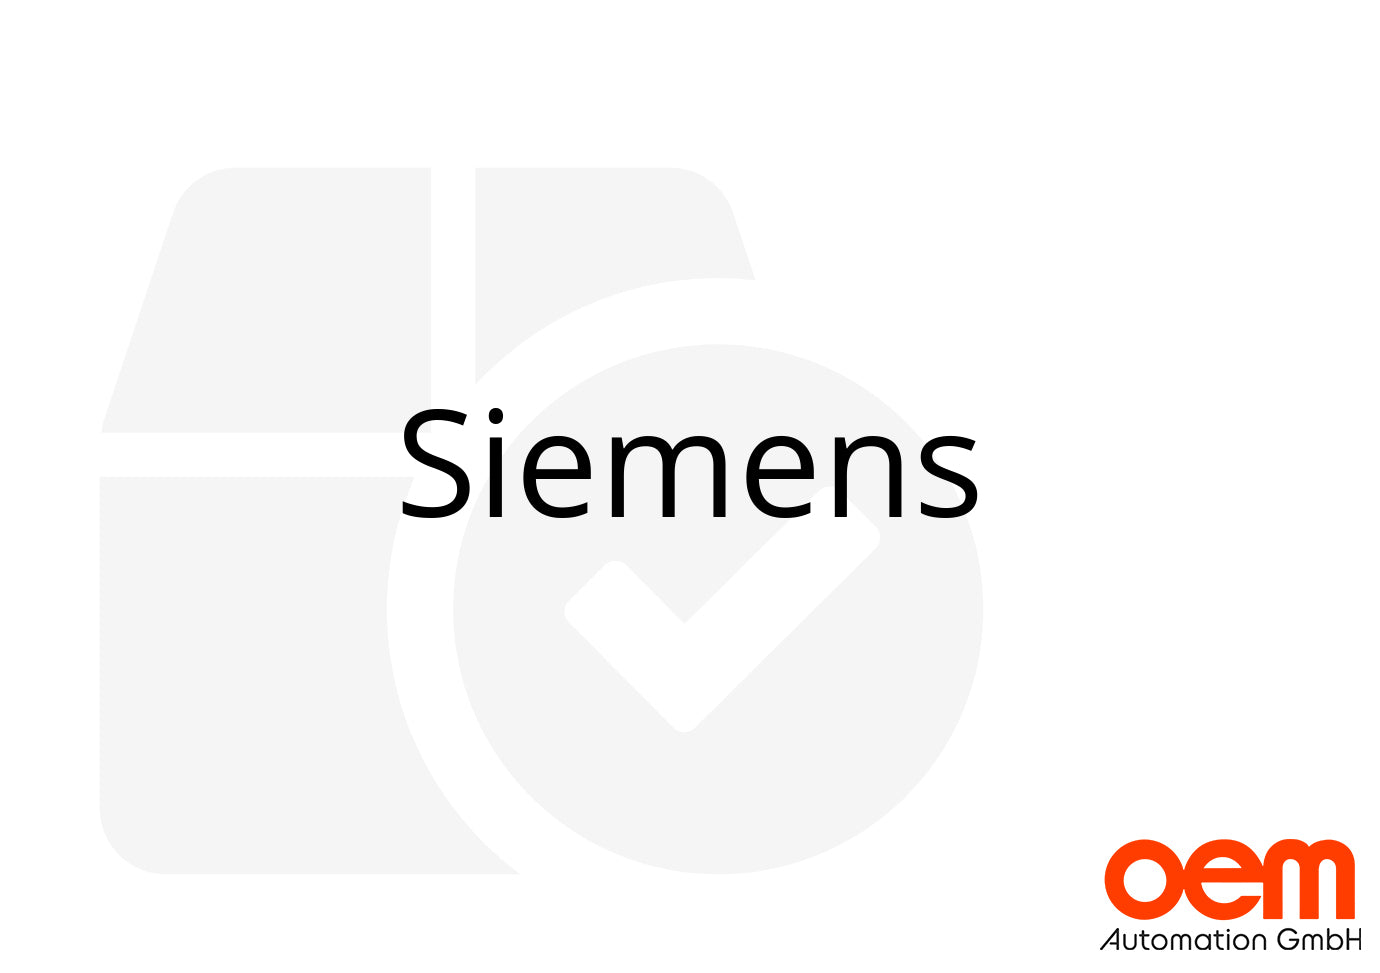 Siemens 6ES7134-4GB01-0AB0